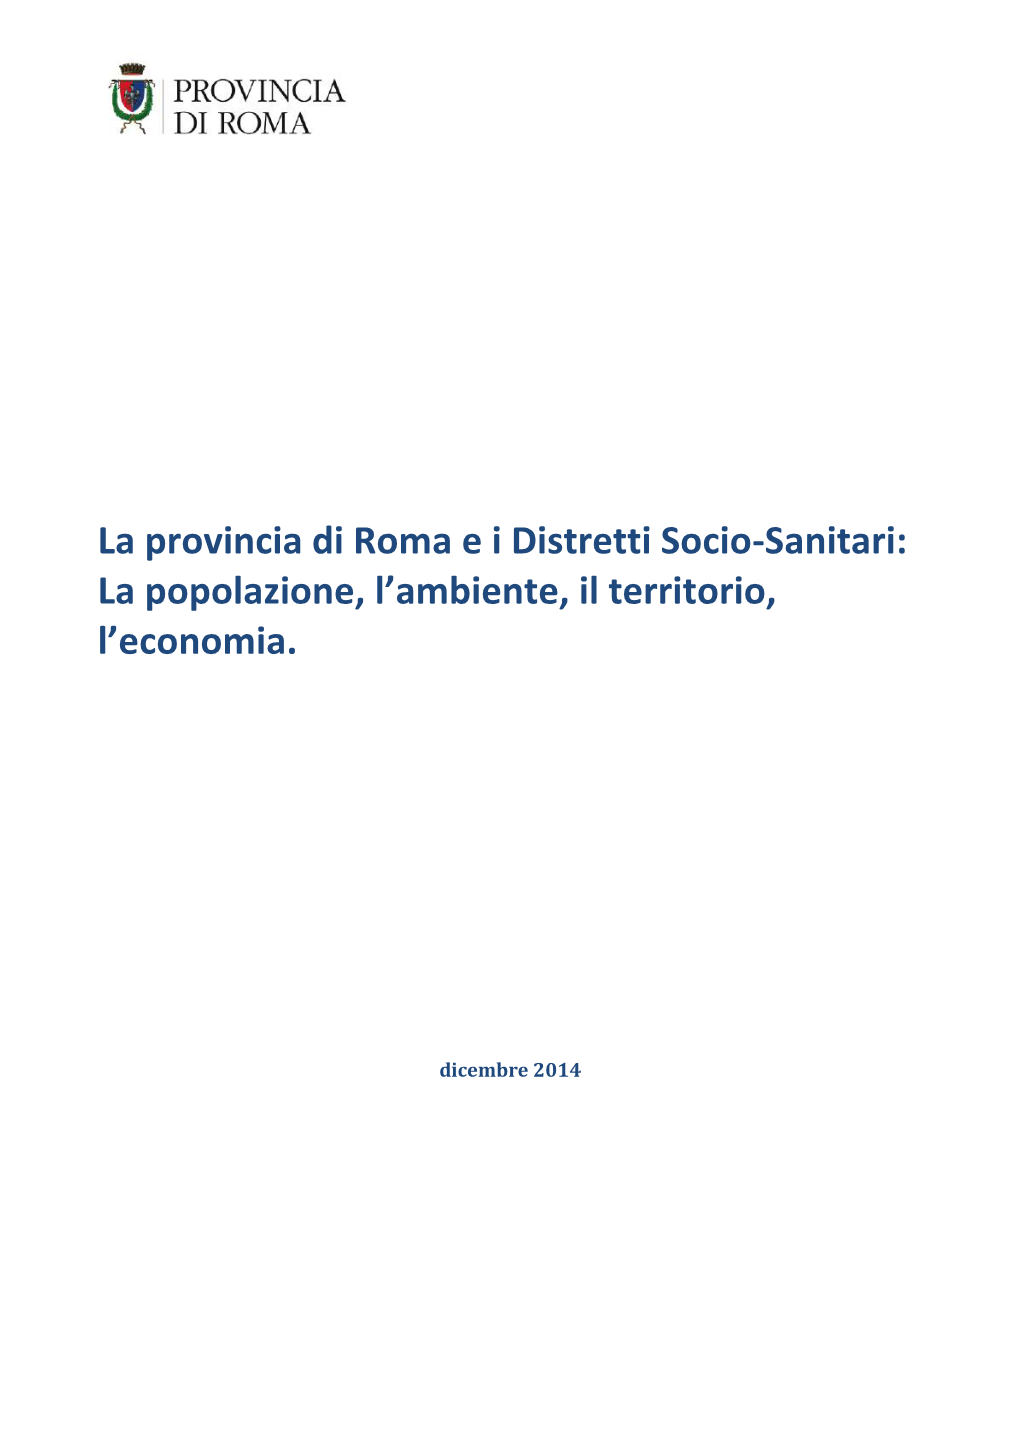 La Provincia Di Roma Ei Distretti Socio-Sanitari